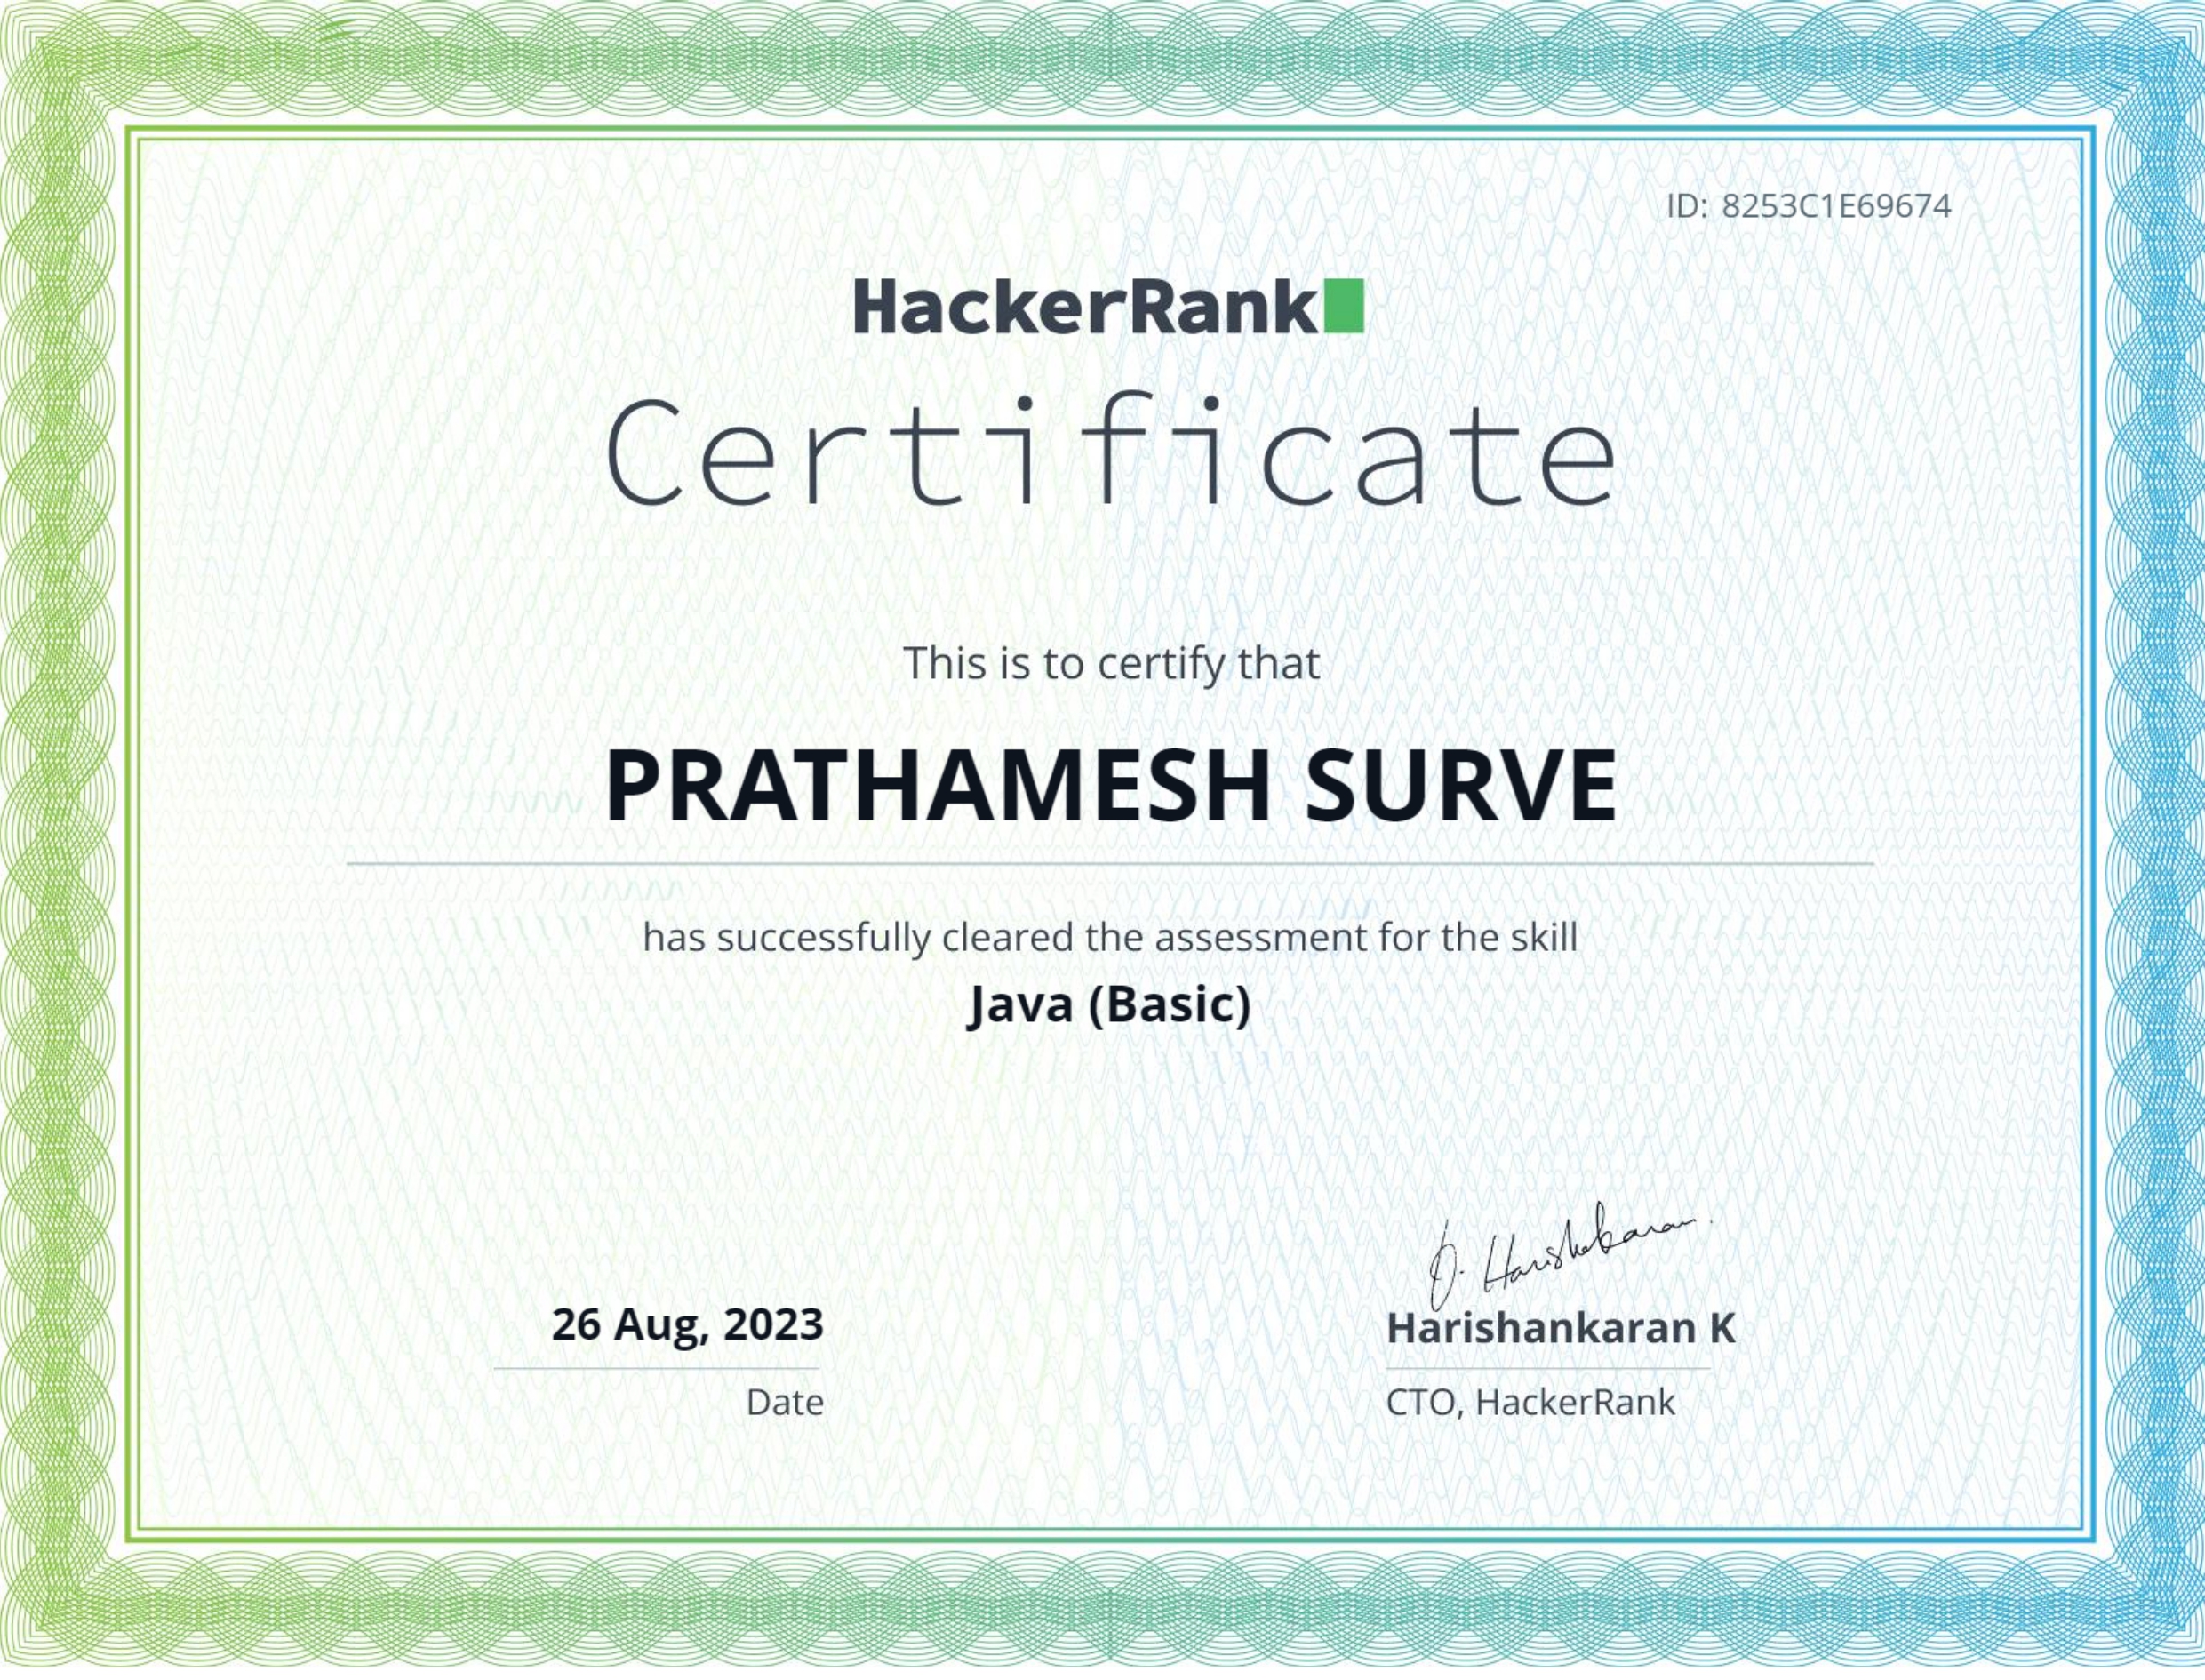 Java (Basic) certificate by HackerRank